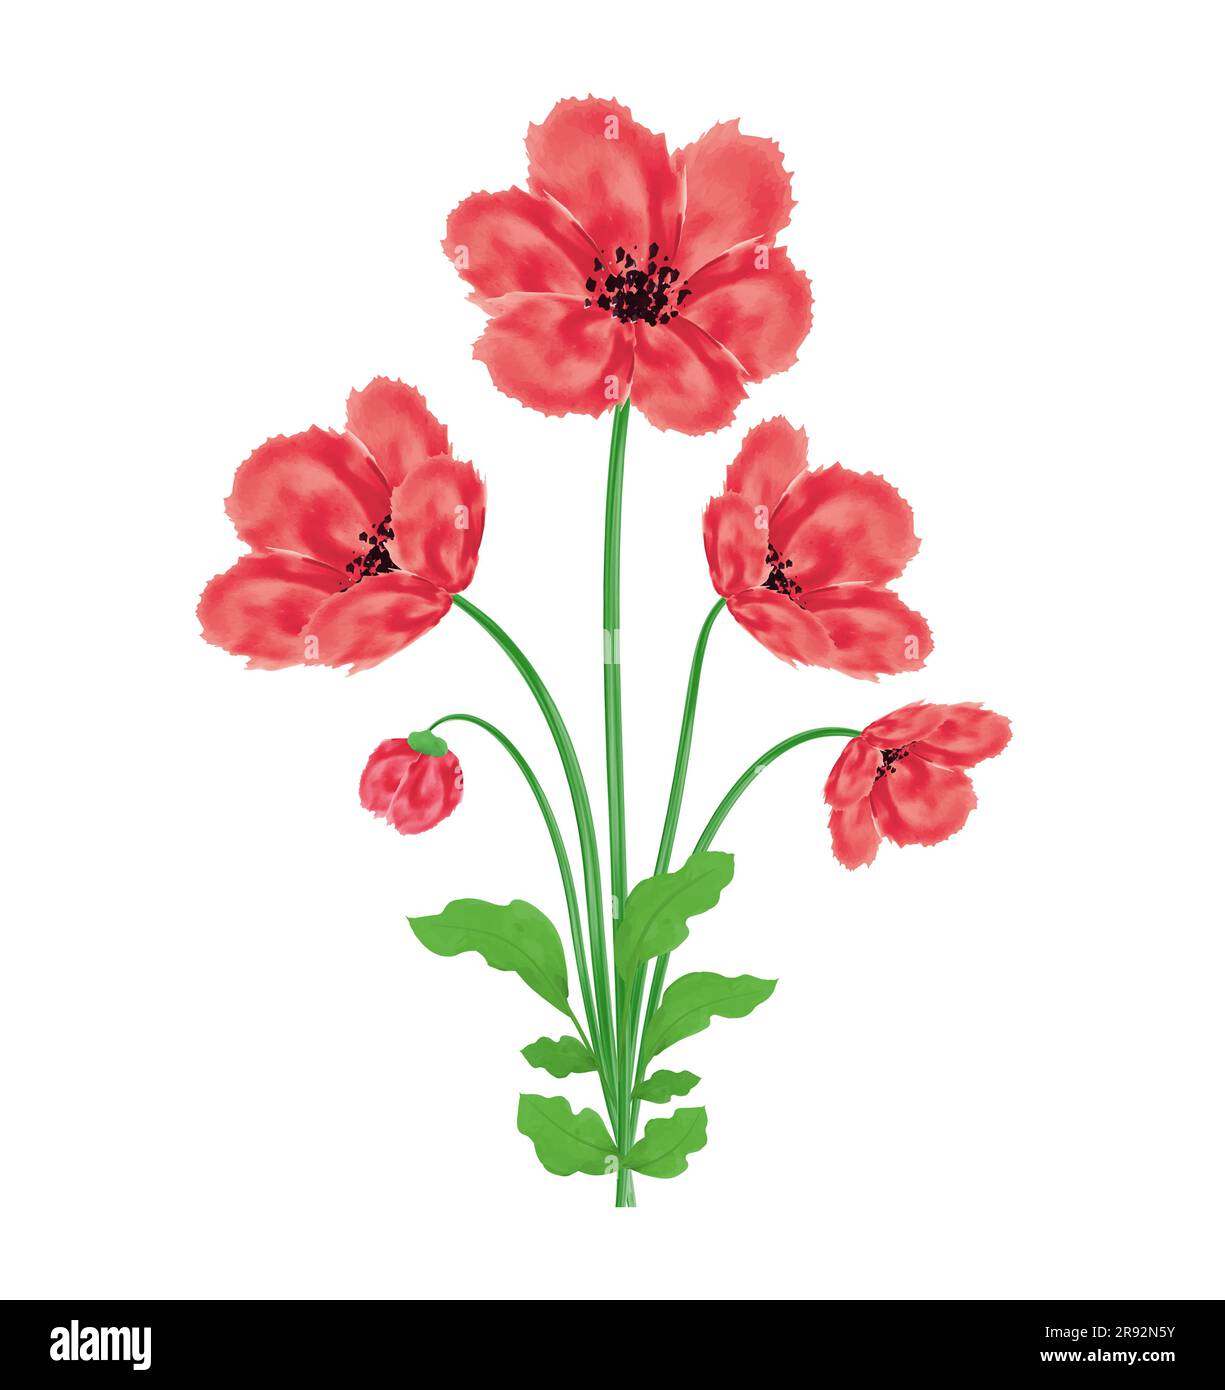 Fleurs de pavot bouquet d'aquarelle élément de design Illustration vectorielle pour le jour du souvenir, le jour d'Anzac isolé sur fond blanc Illustration de Vecteur